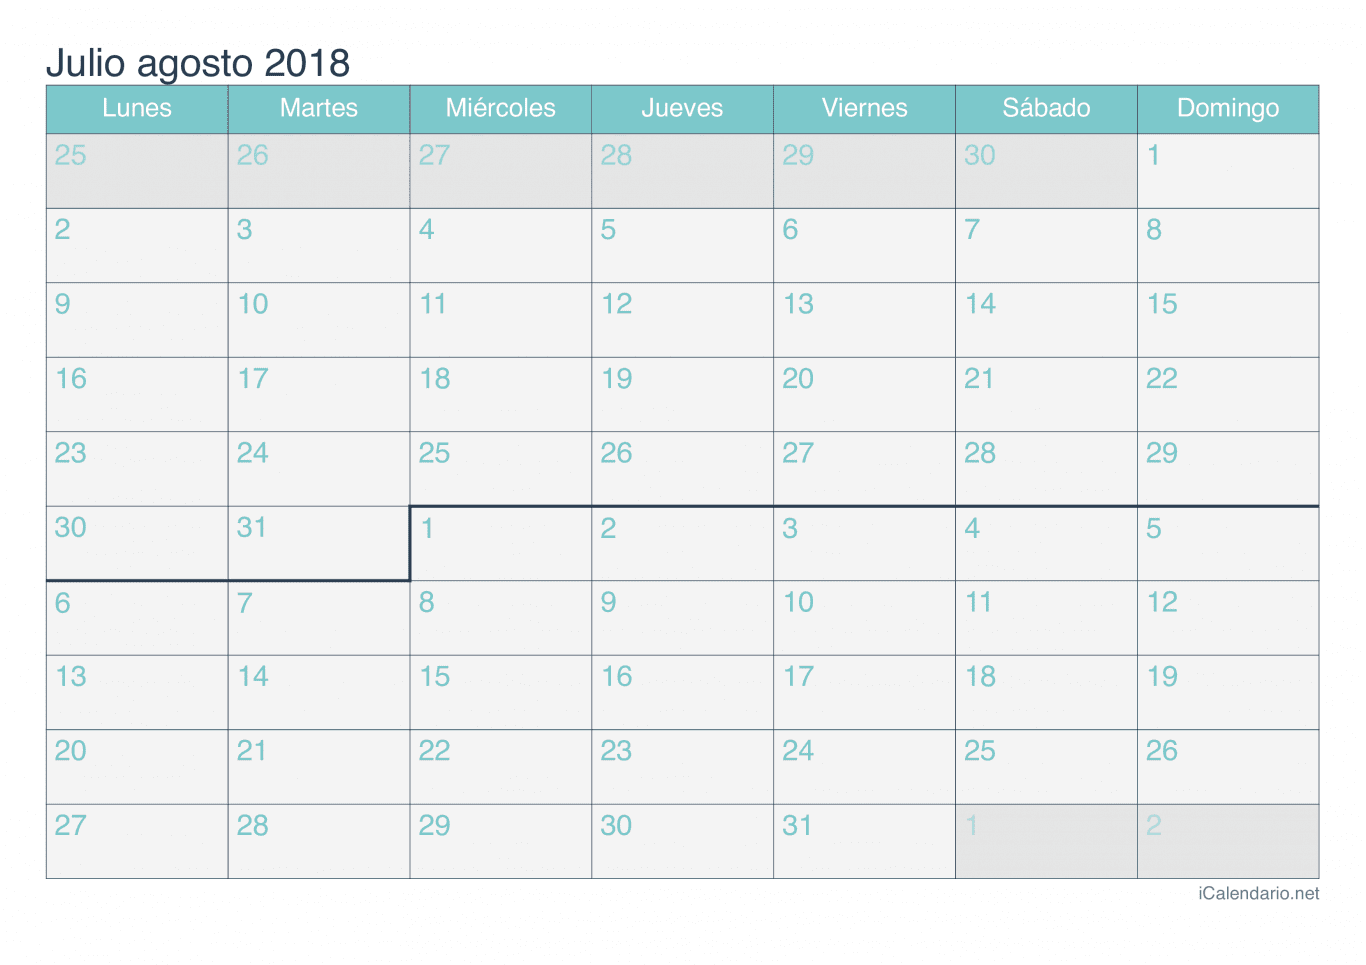 Calendario de julio agosto 2018 - Turquesa